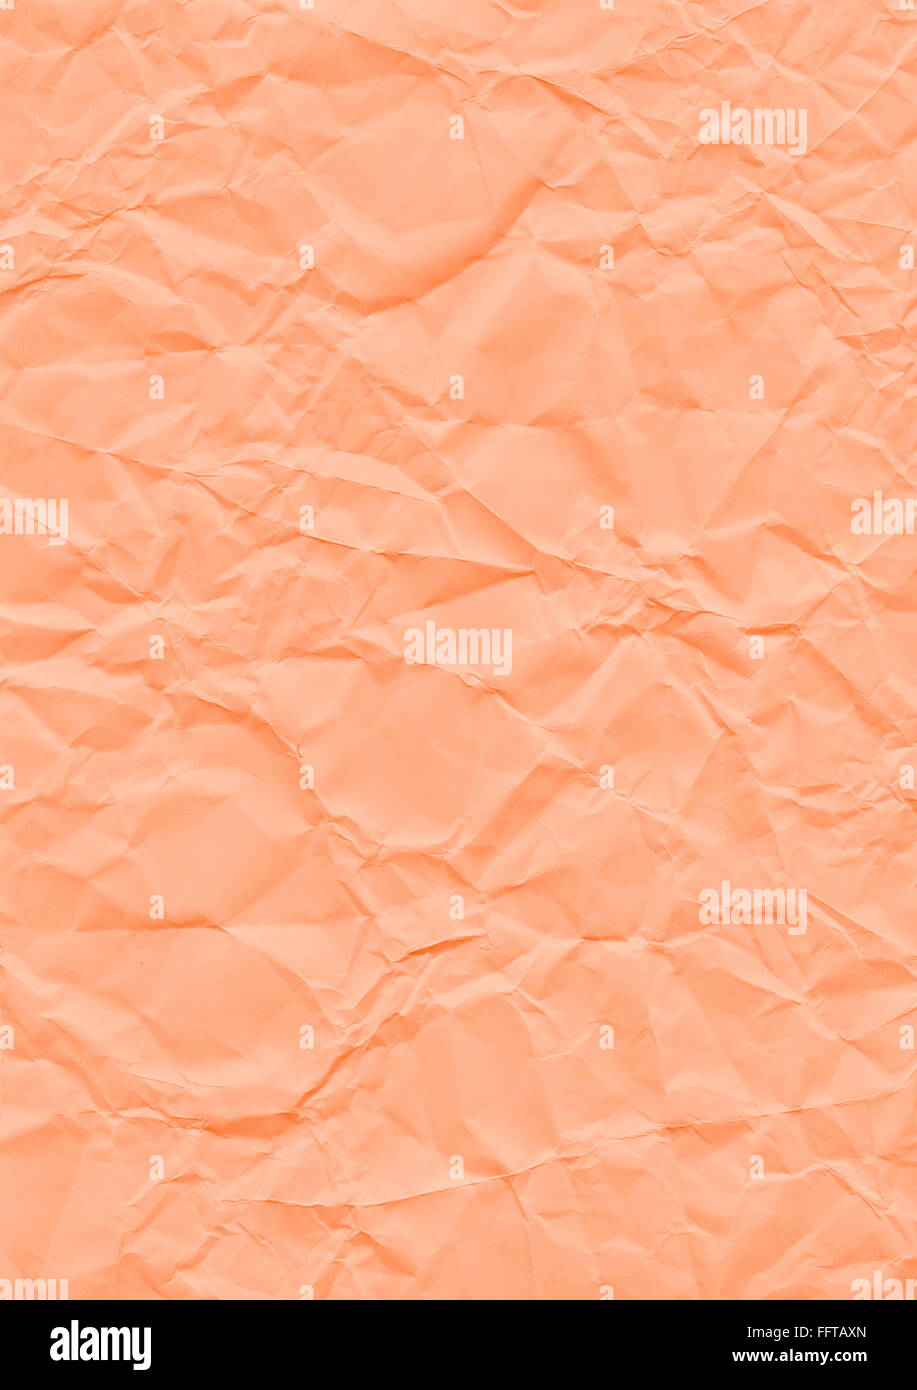 Knitter Hintergrund orange Papier geknickt Knicke knicken zerknittert Knautsch zerknautscht kaputt gefaltet falten faltig Textur Foto Stock